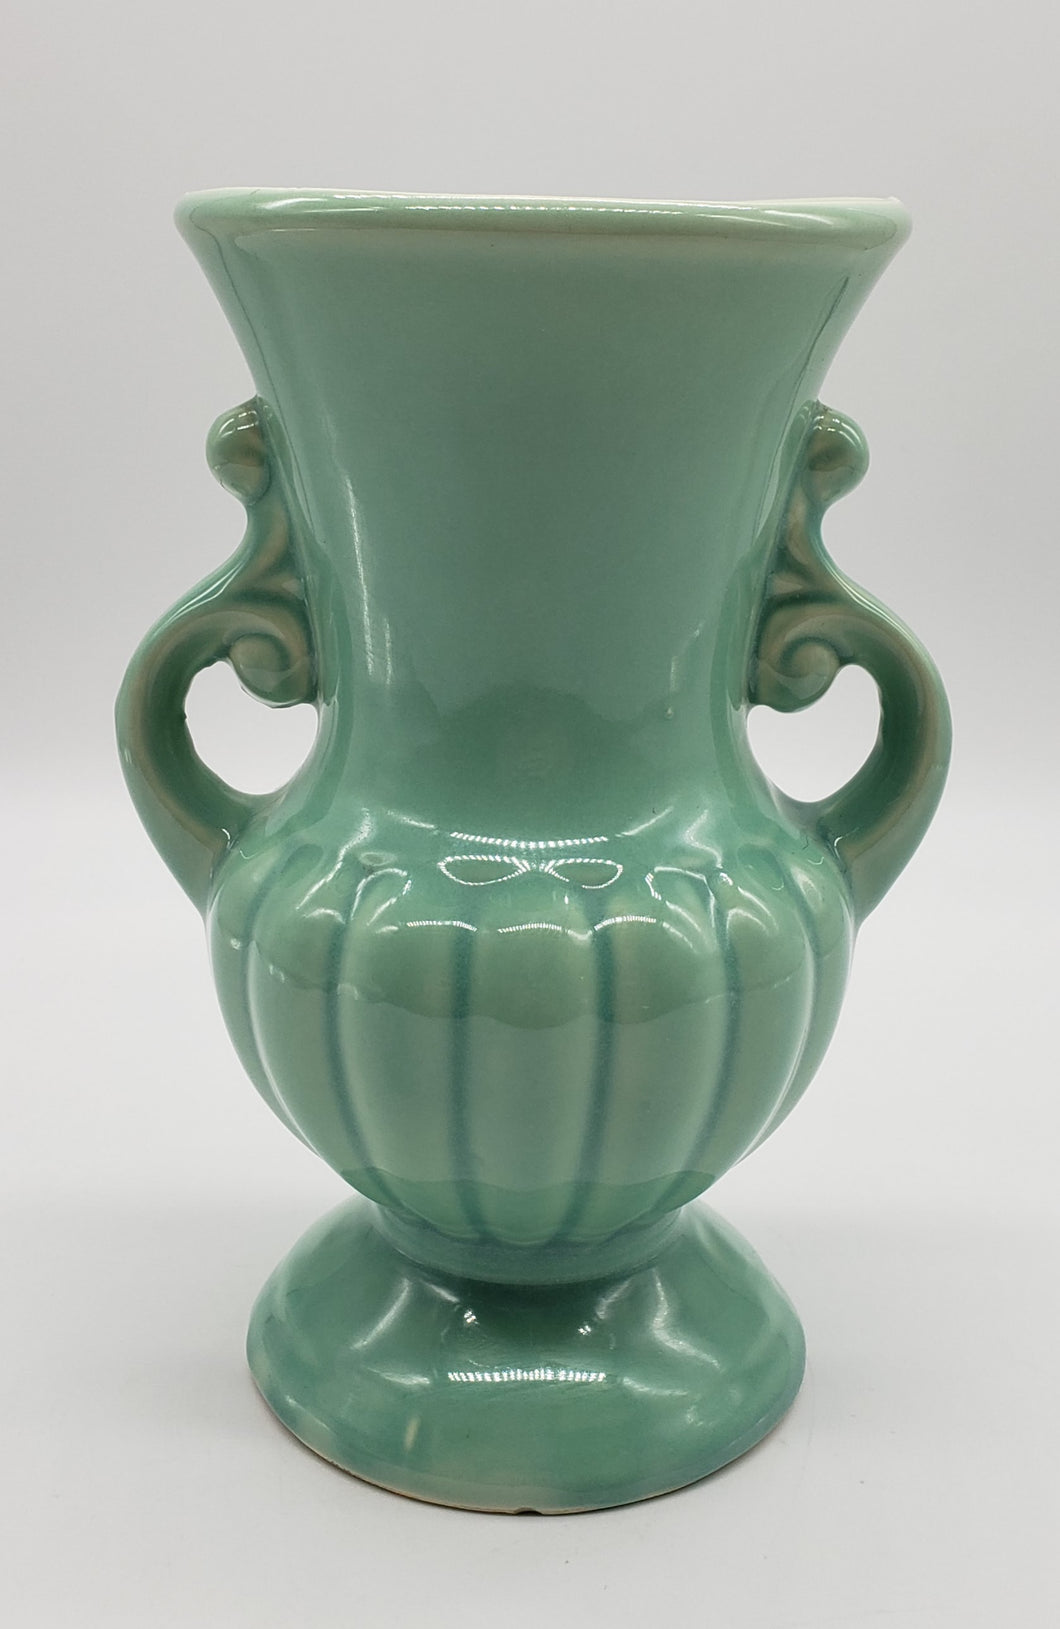 Vintage USA Vase, Soft Green Glaze, Handles with Scrolling